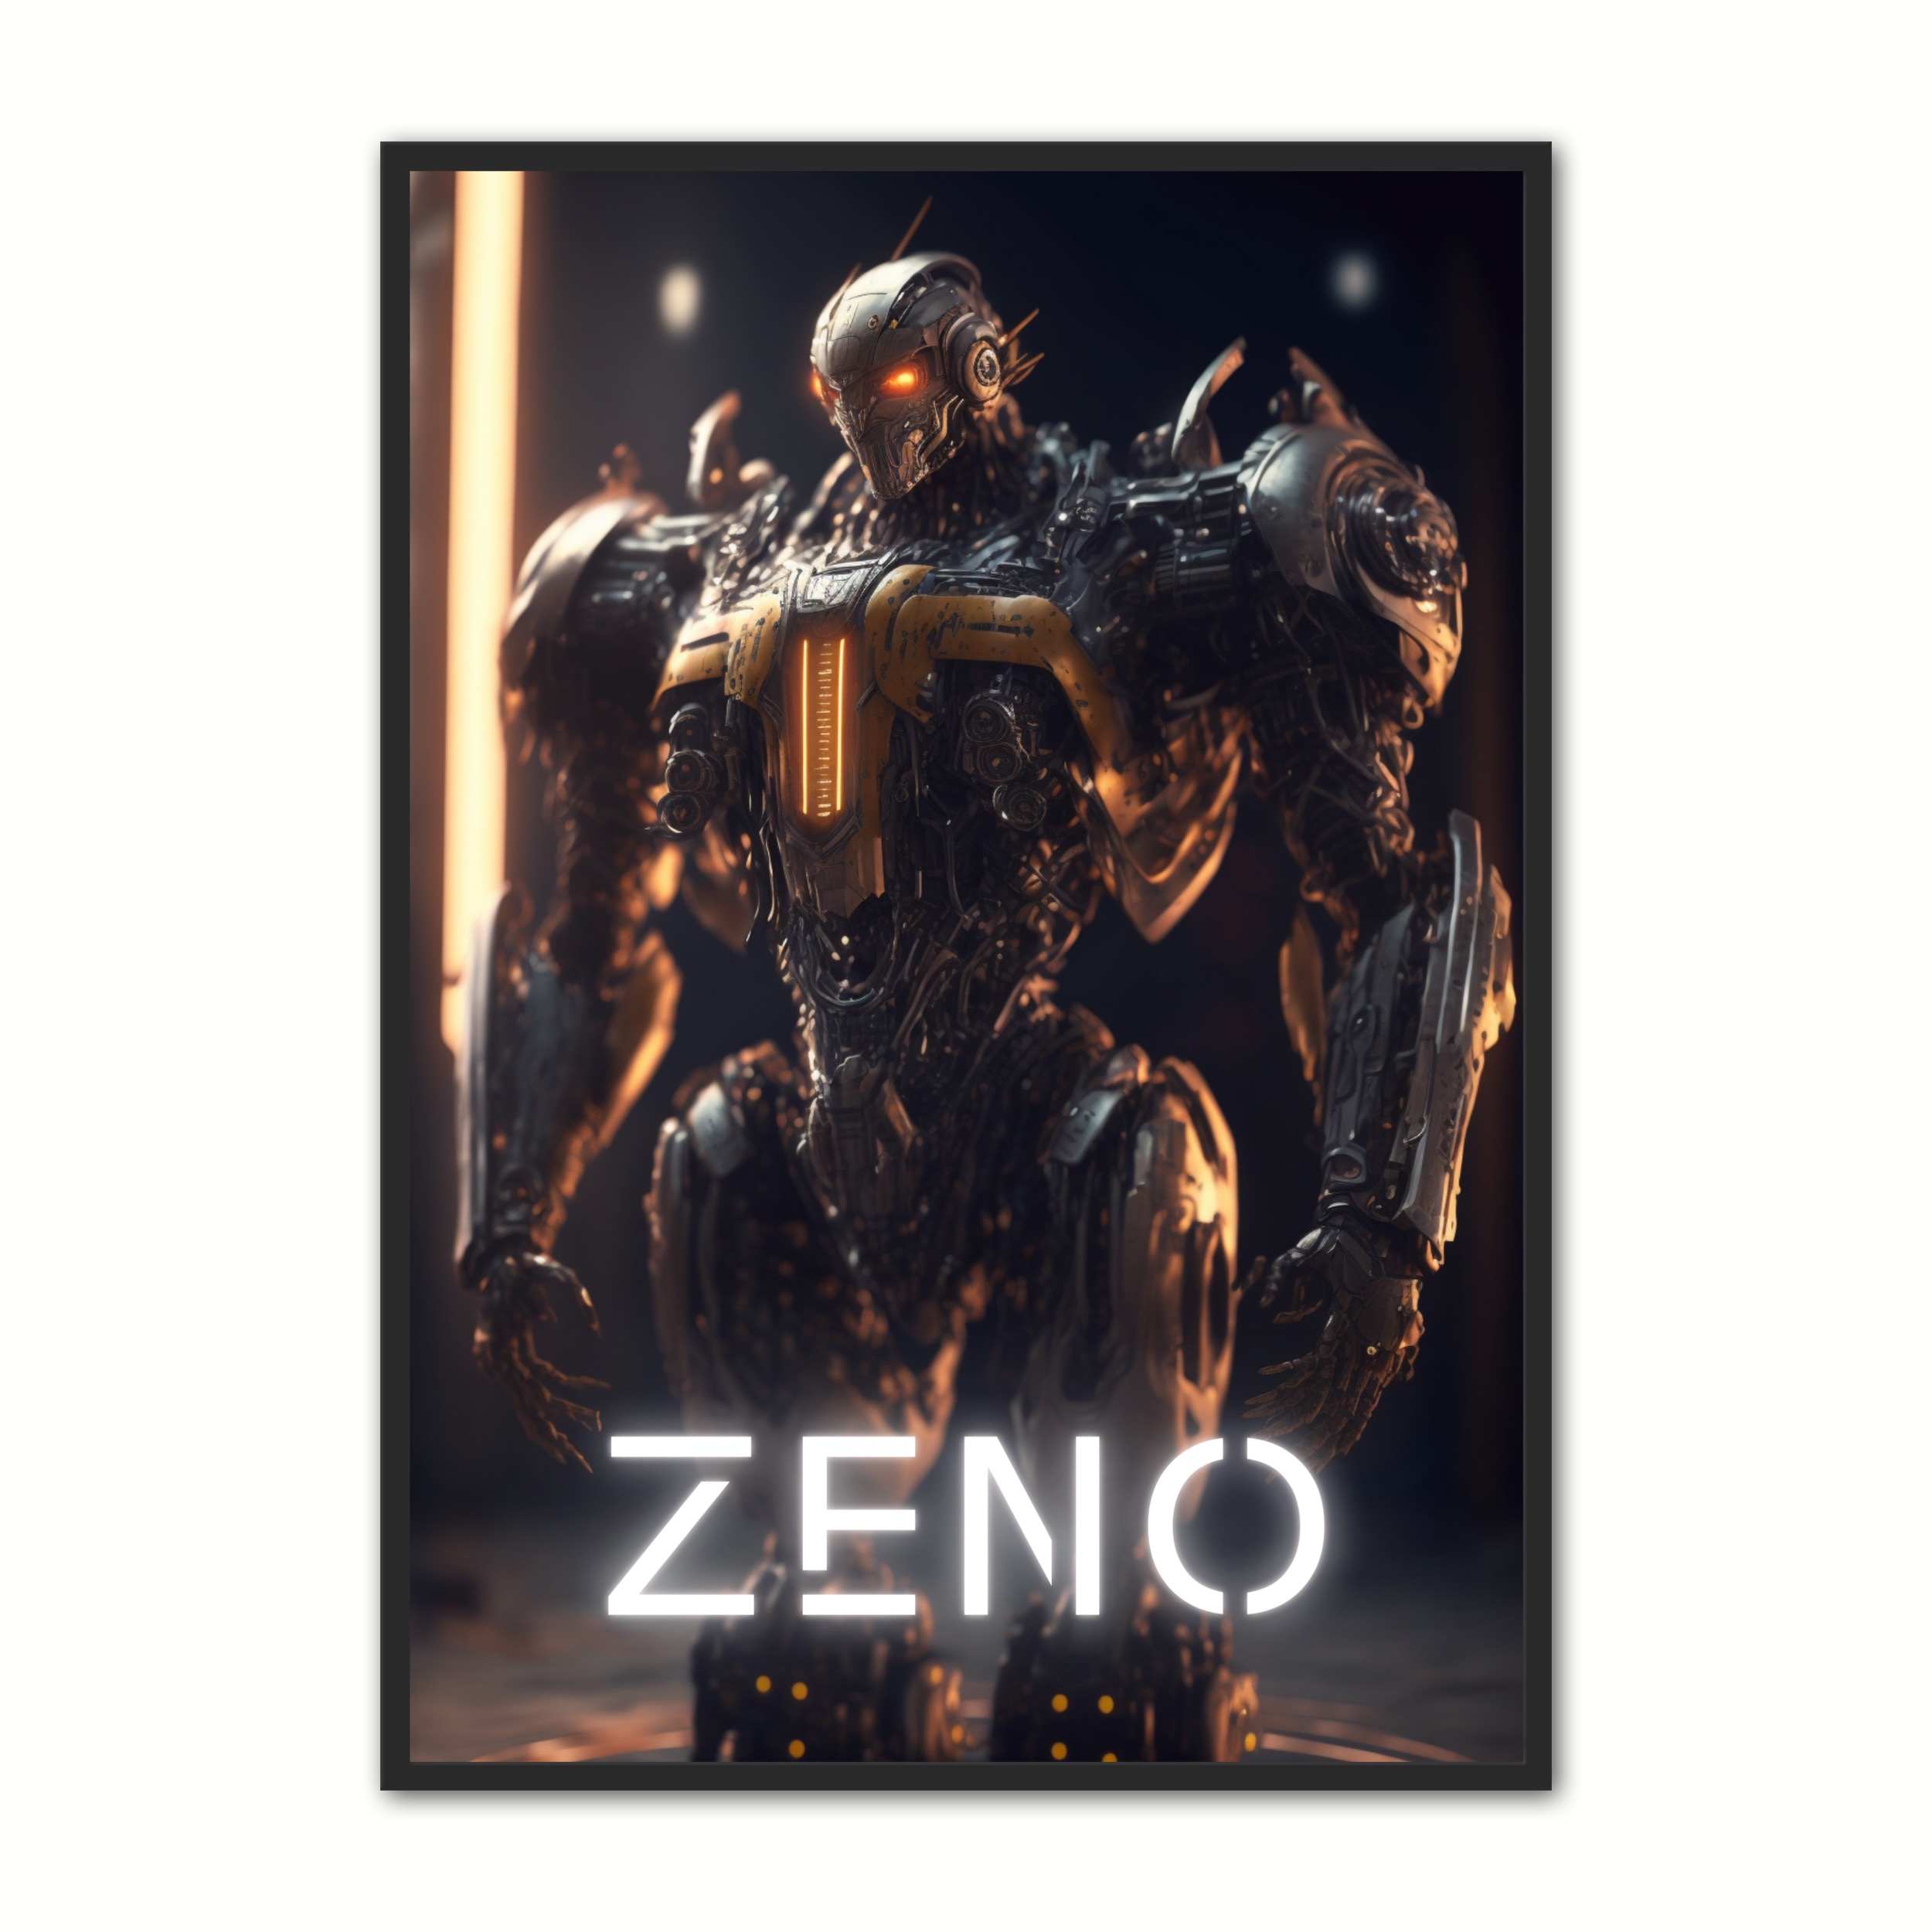 Billede af Plakat med Zeno - Android 21 x 29,7 cm (A4)